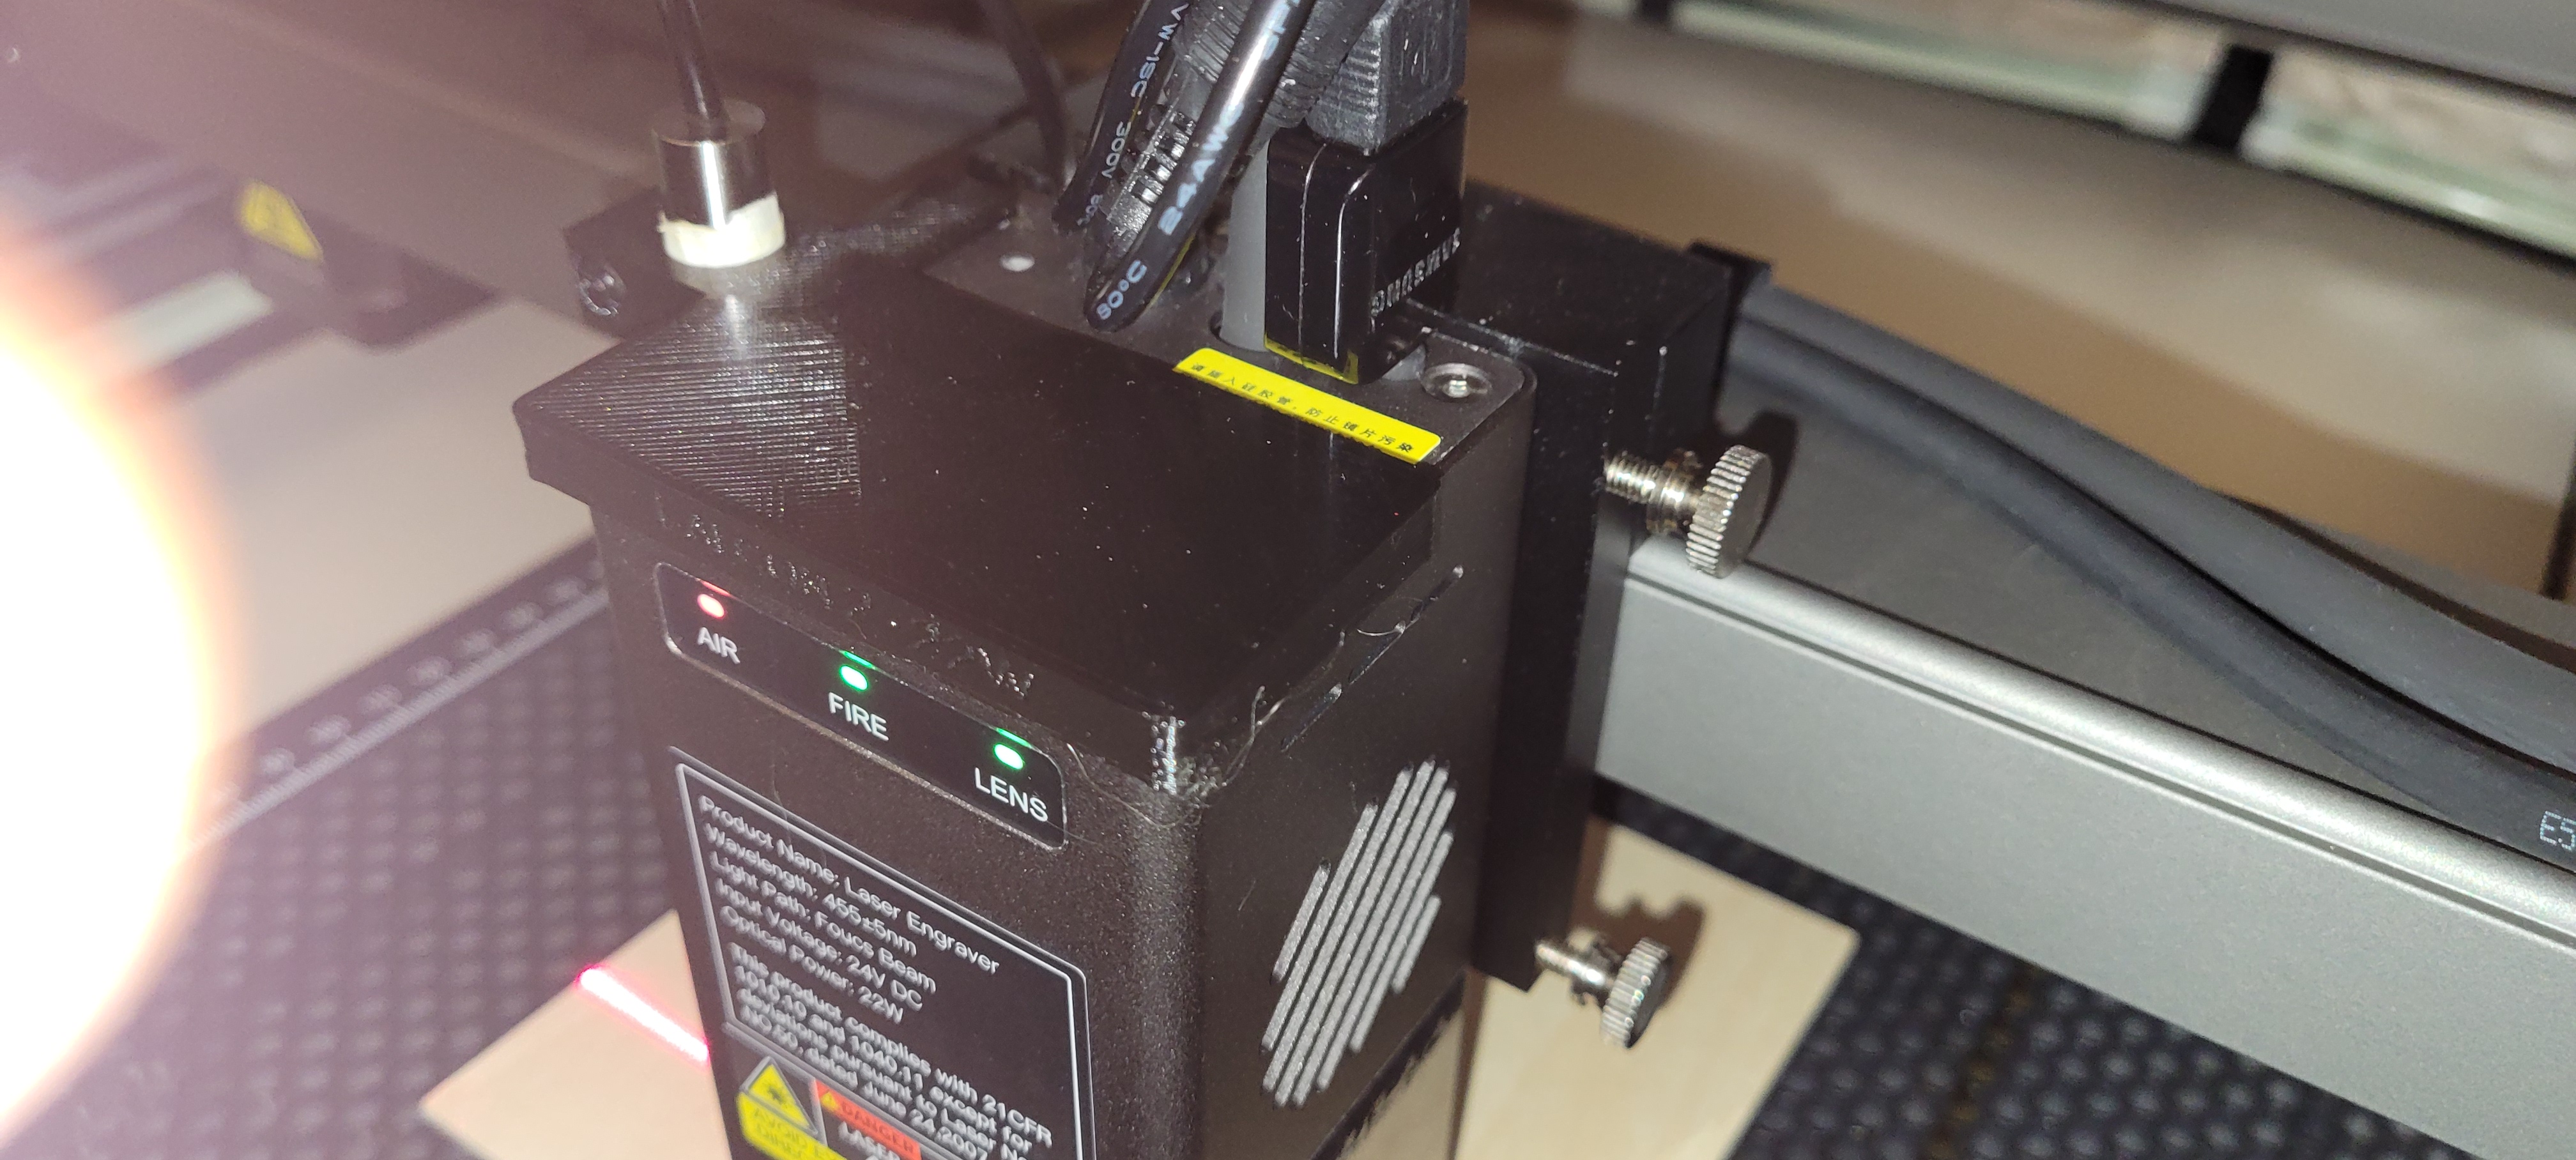 Creality Falcon 2 Laser Engraver - 22W - DC 3D Printers